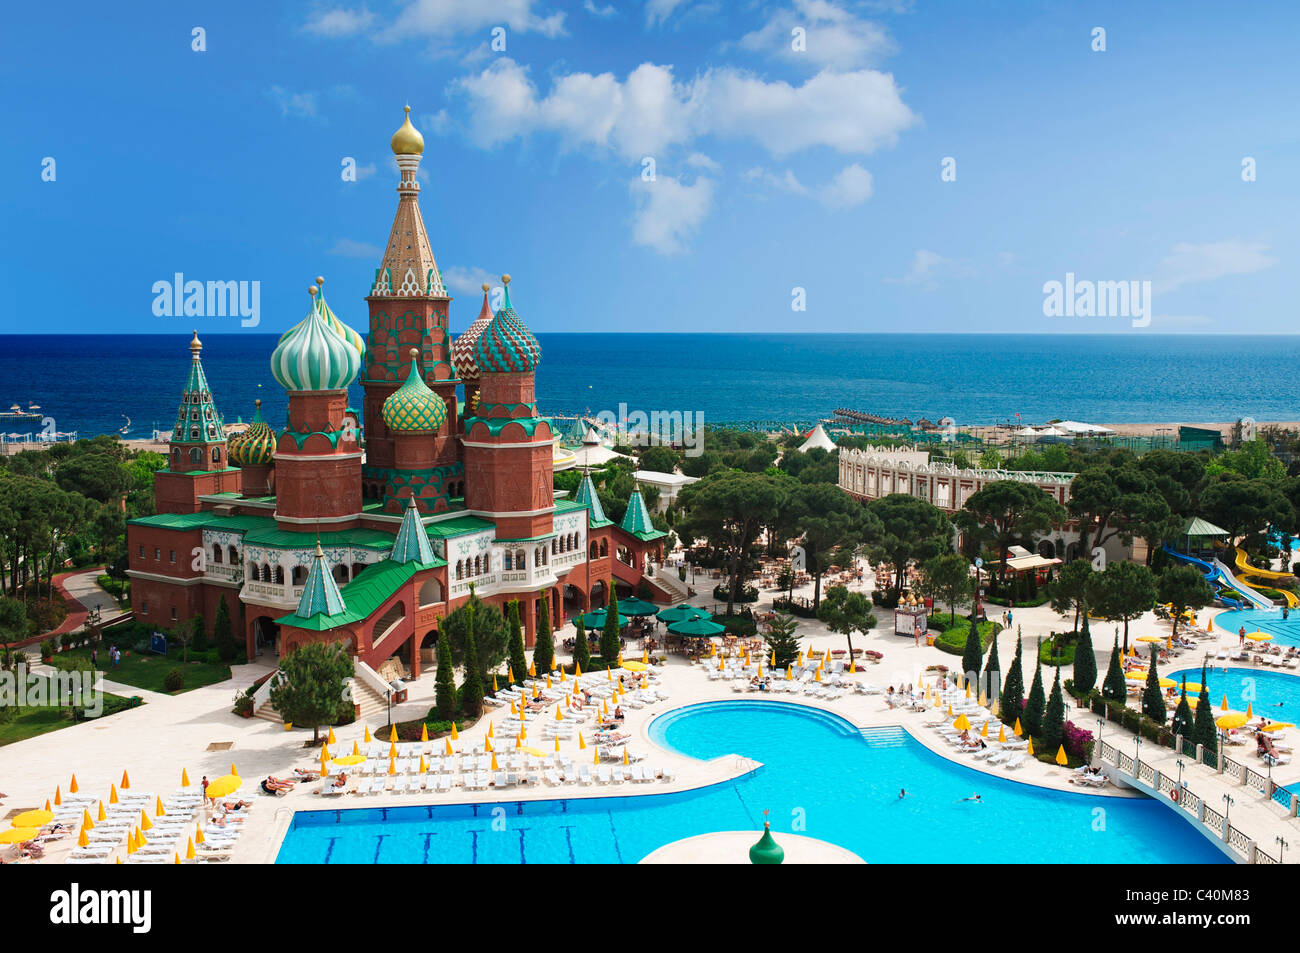 Türkische Riviera Hotel WOW, Kremlin Palace, Antalya, türkische Riviera, Türkei, pool Stockfoto